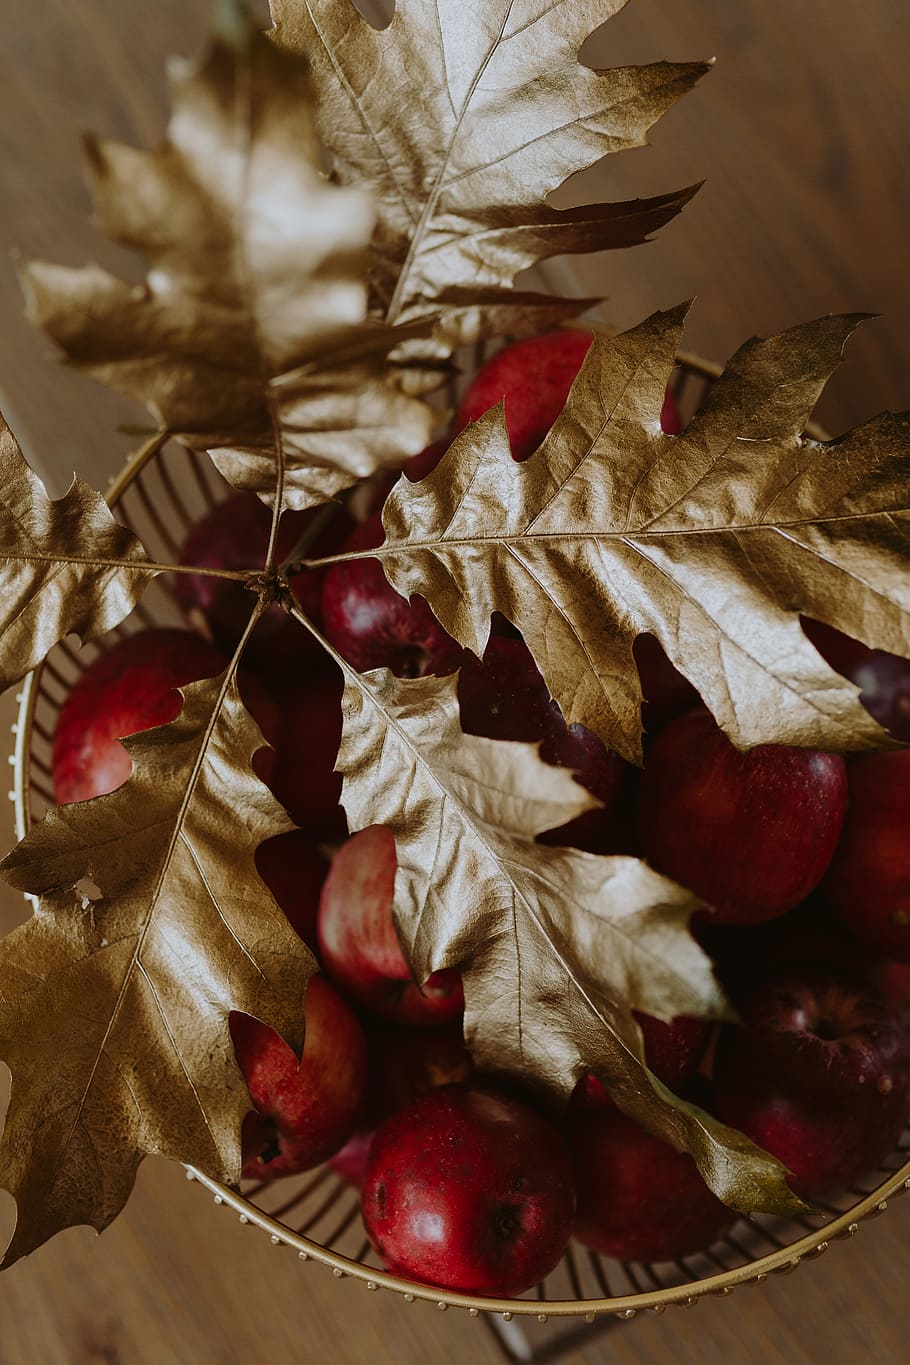 vermelho, maçãs, dourado, carvalho, folhas, maçã, maçã vermelha, folhas de ouro, folhas douradas, folha de ouro